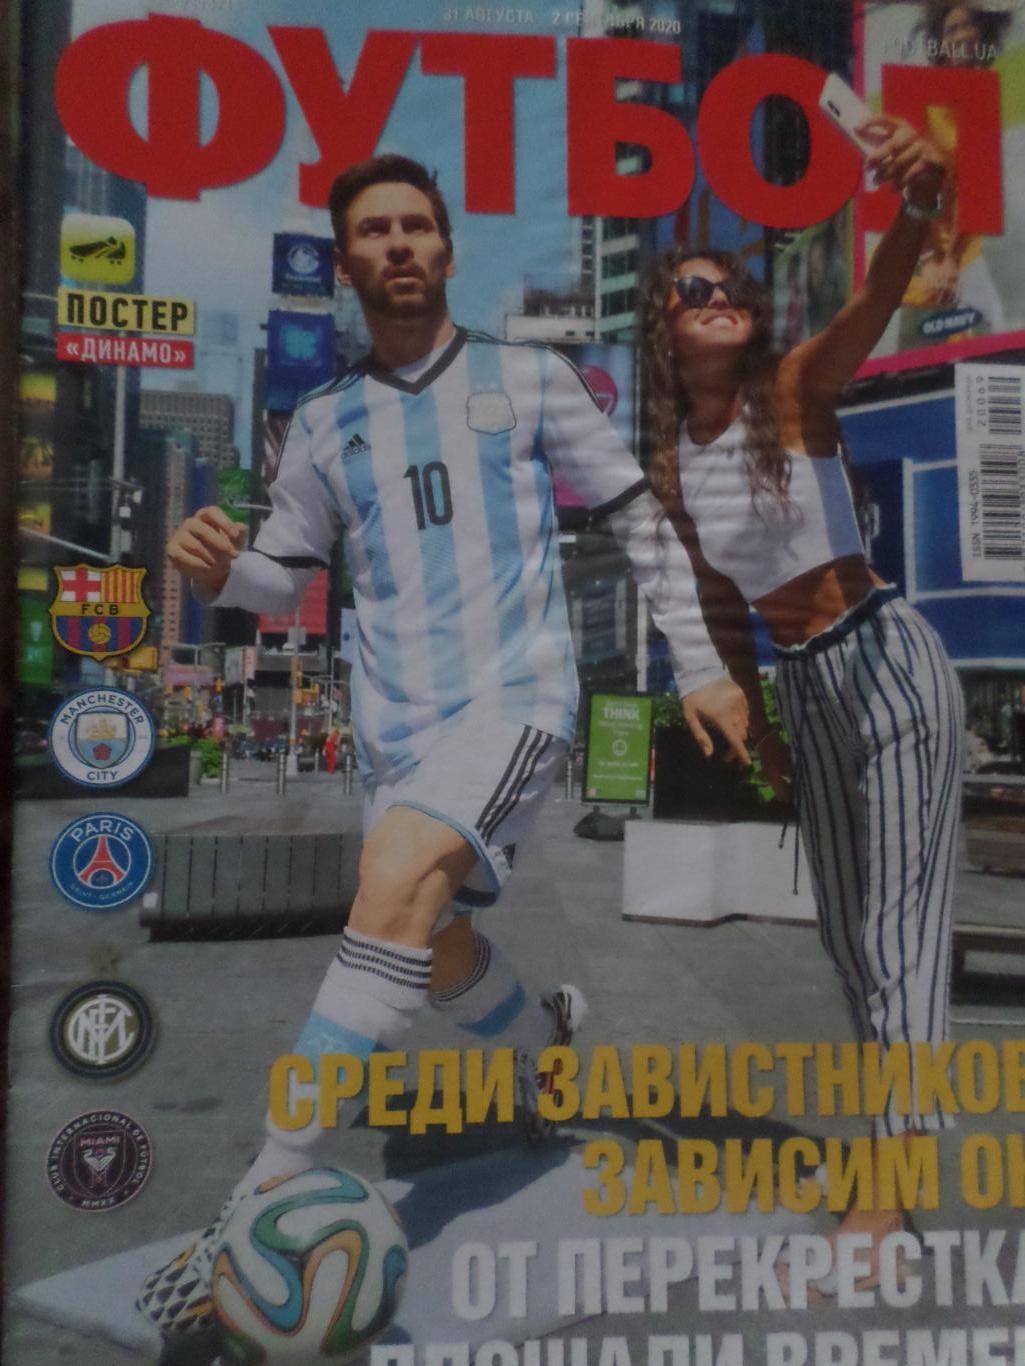 Еженедельник Футбол, Киев, № 69 2020 год